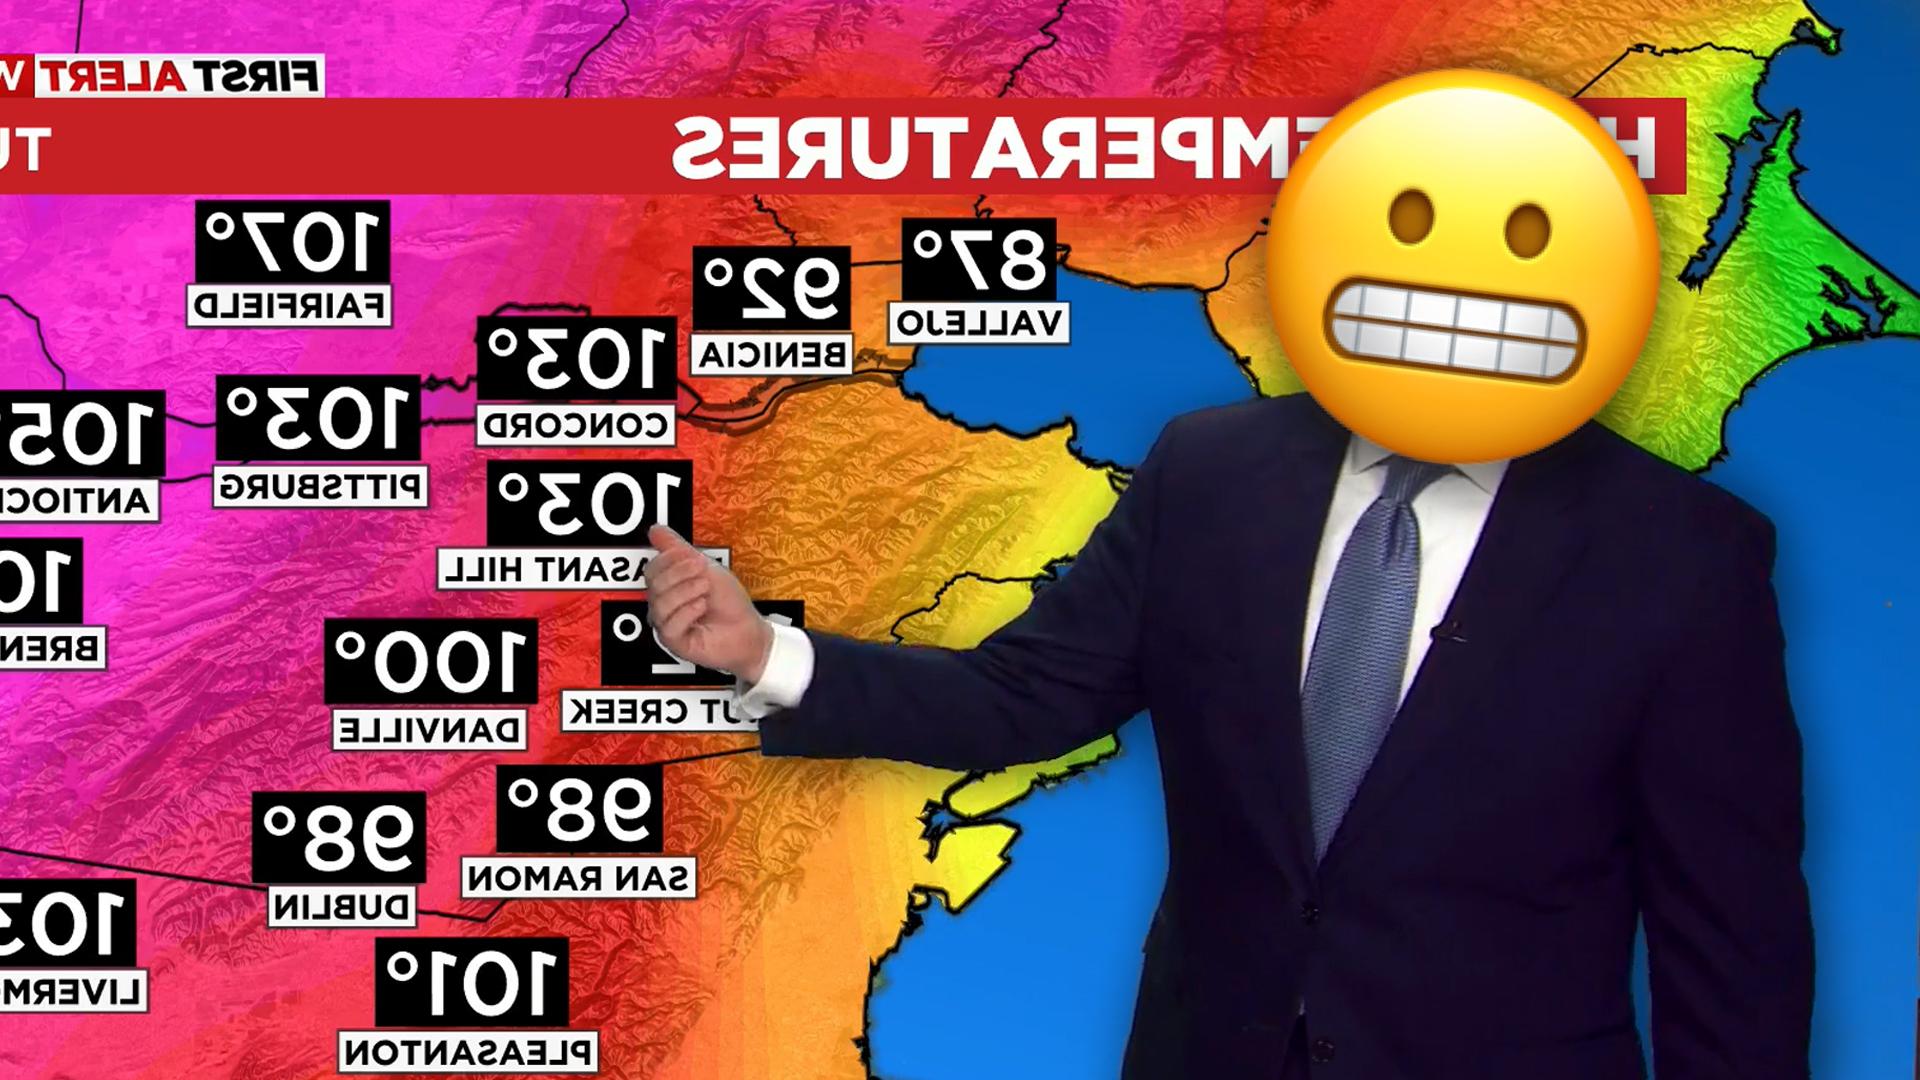 天气预报员站在热浪图前，脸上的表情符号是鬼脸